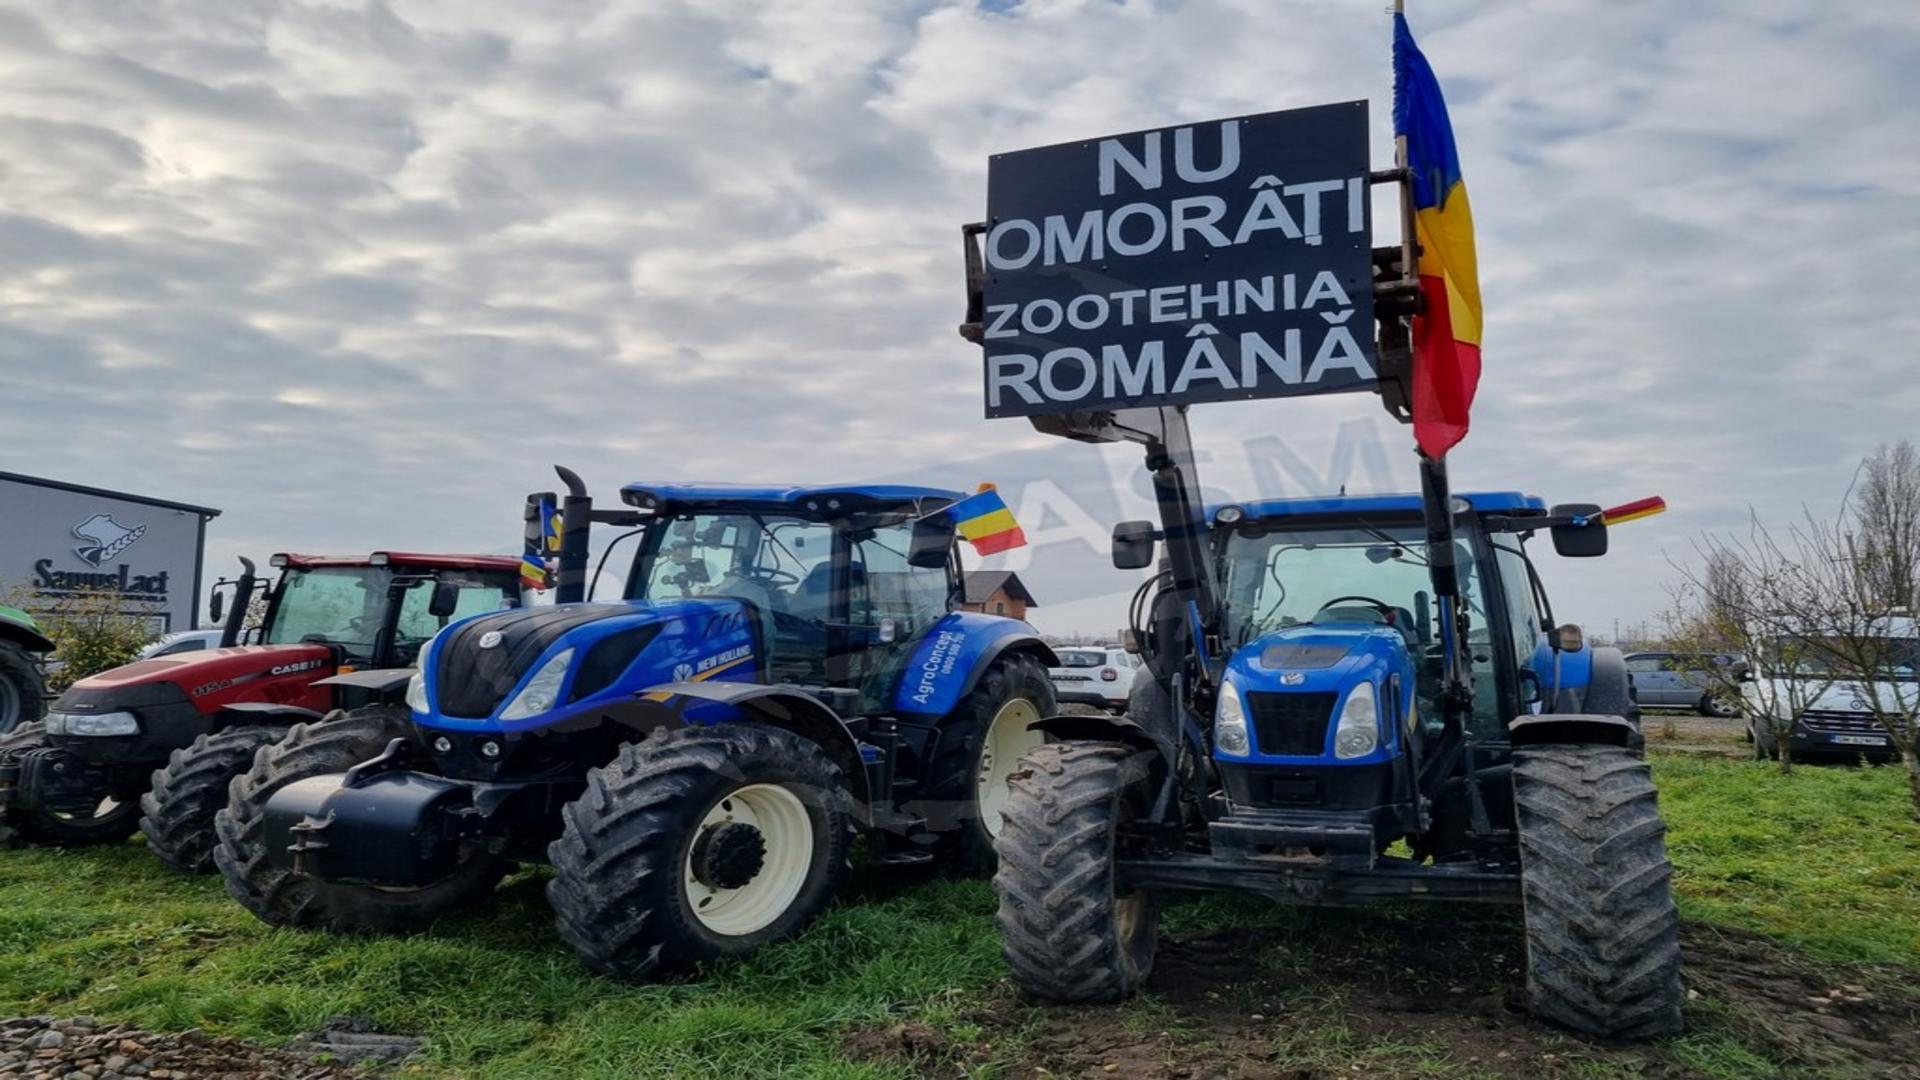 Fermierii BLOCHEAZĂ România